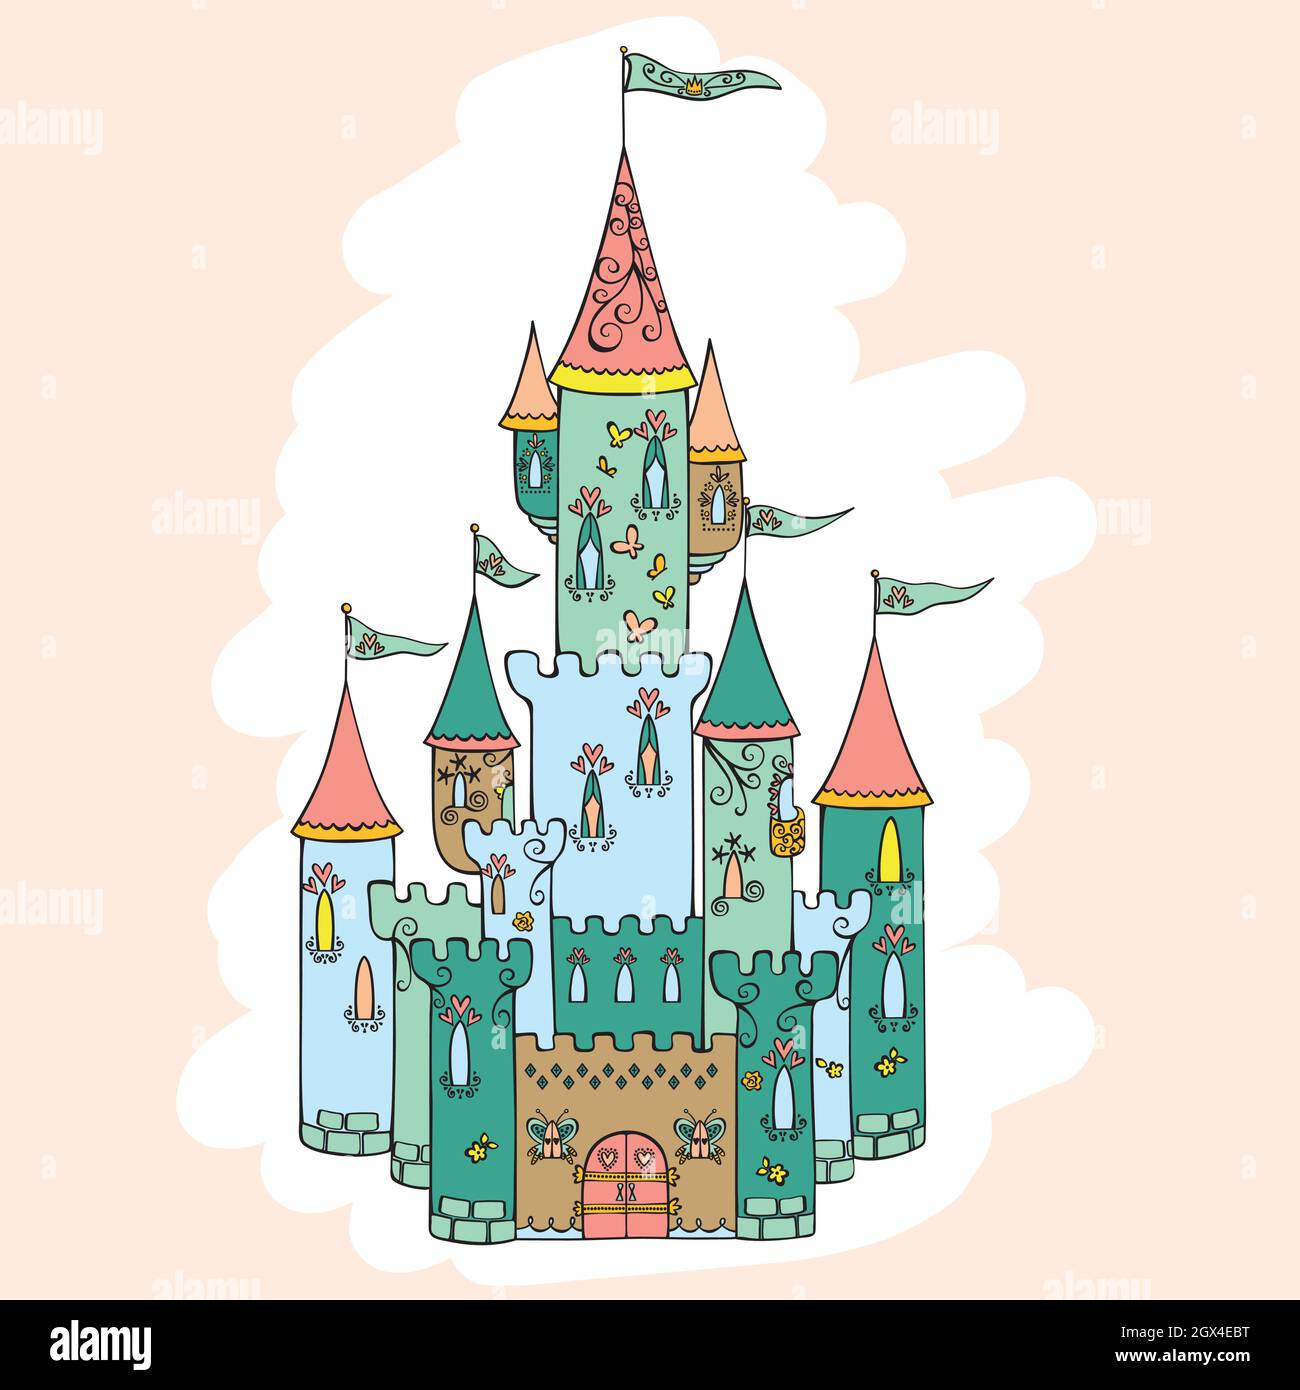 Castello disegnato a mano. Palazzo reale della Principessa. Illustrazione della fiaba. Cuori, farfalle, bandiere, torre. Tagliatelle colorate. Illustrazione Vettoriale